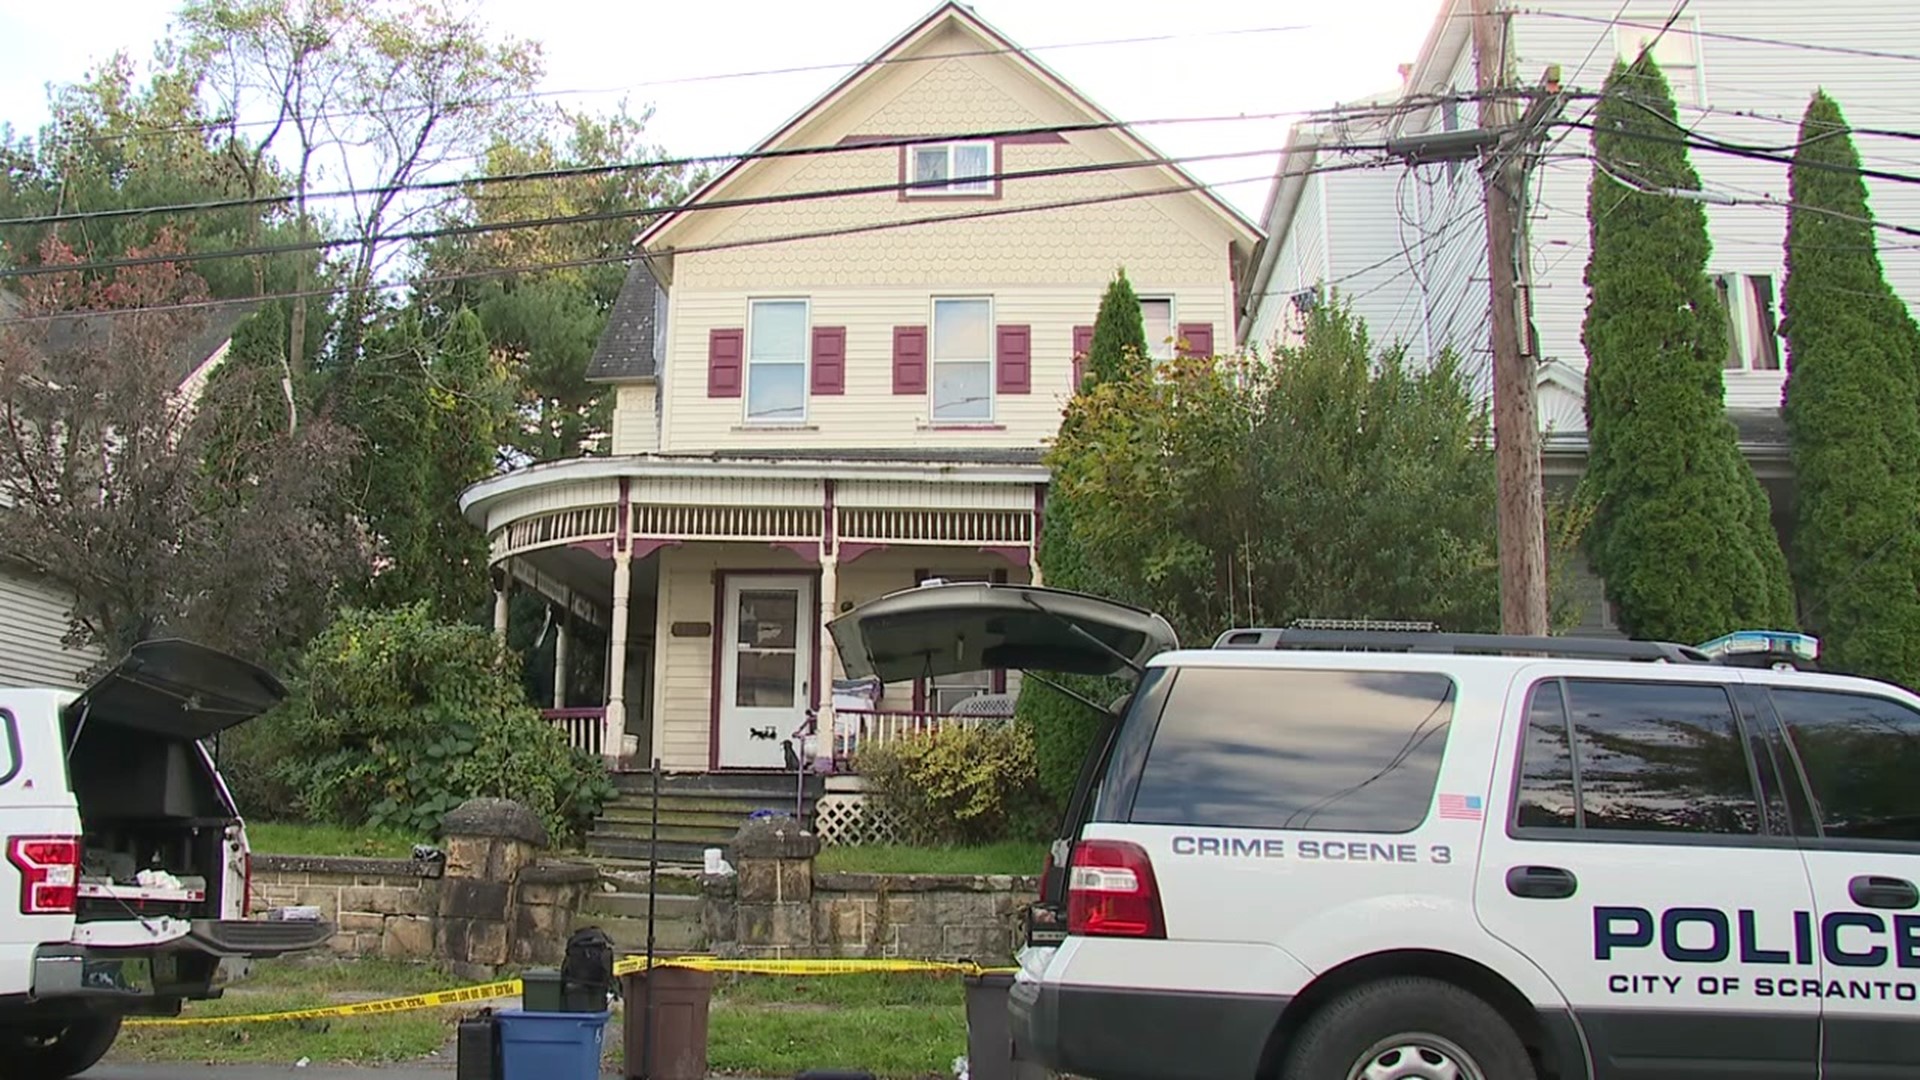 Richard Hazelton was found dead inside a home in Scranton's west side on Wednesday.